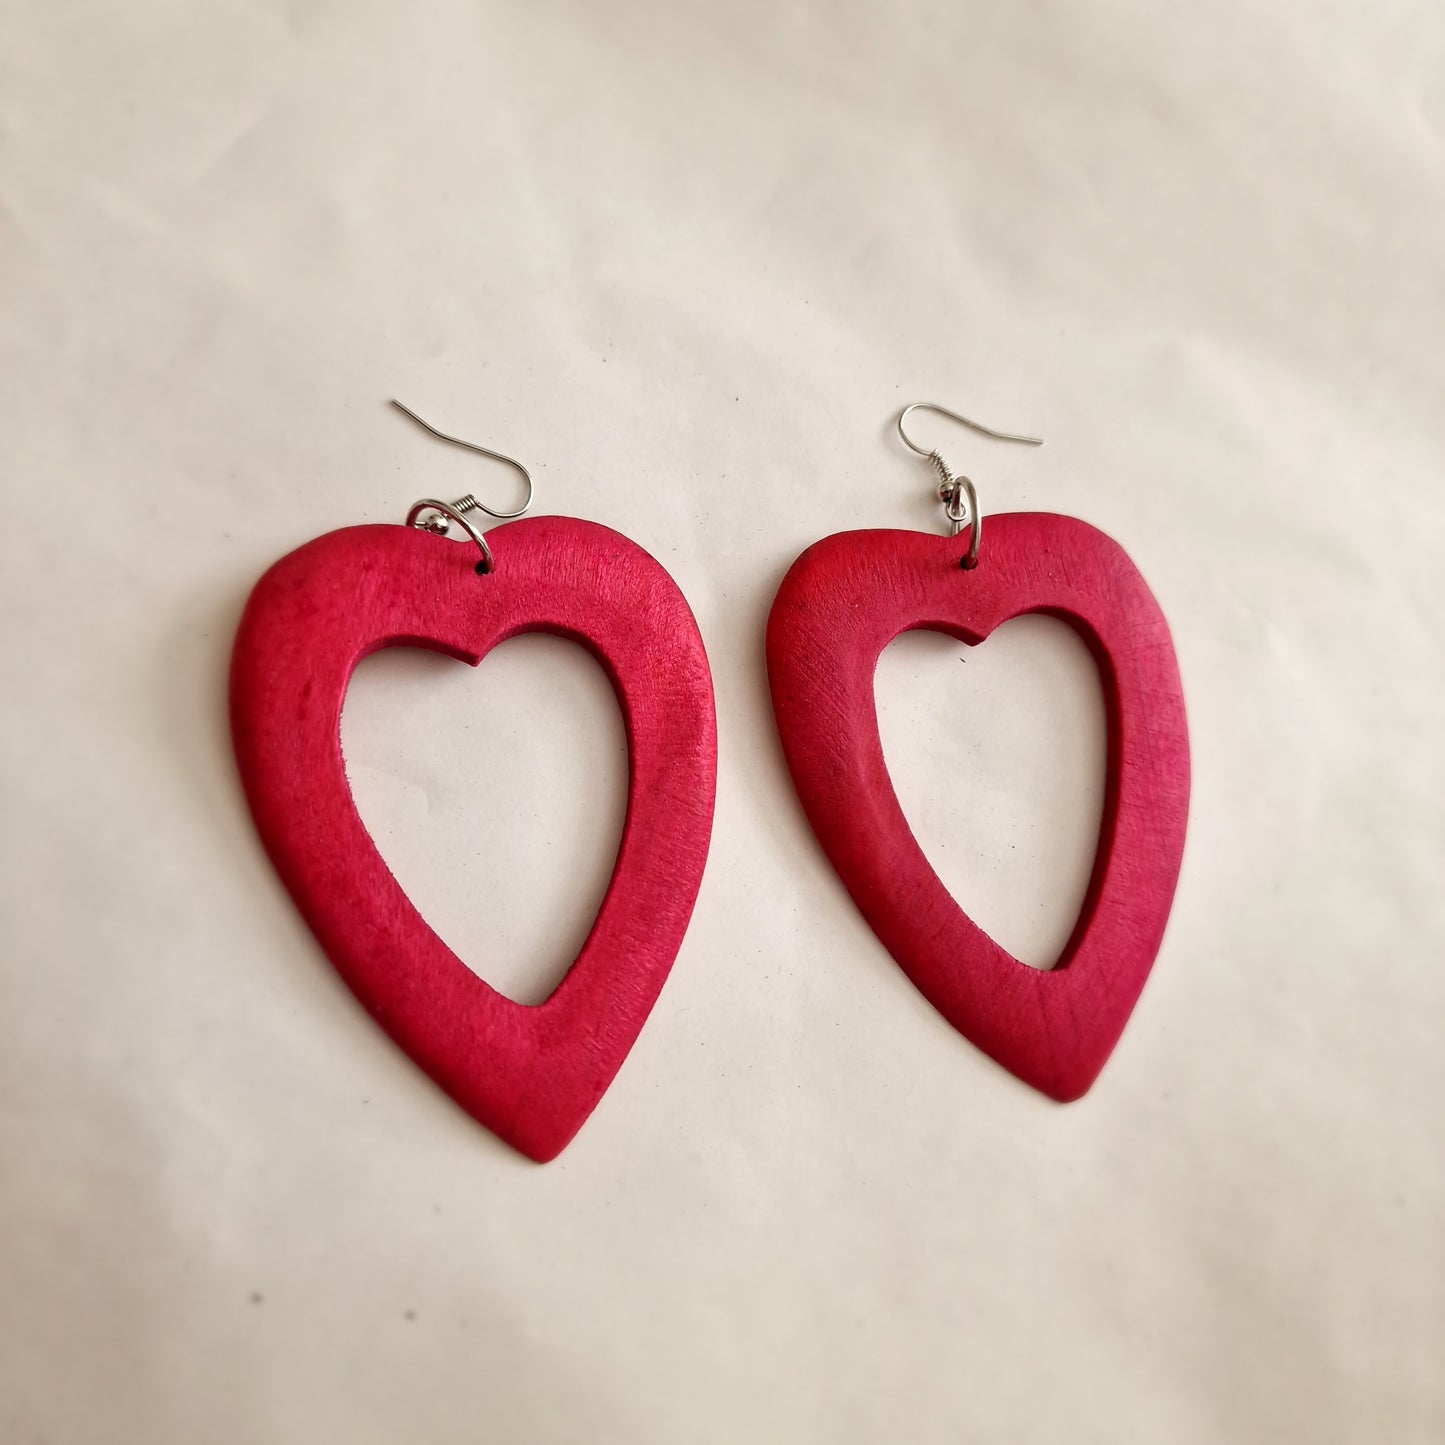 Pink heart-shaped earrings